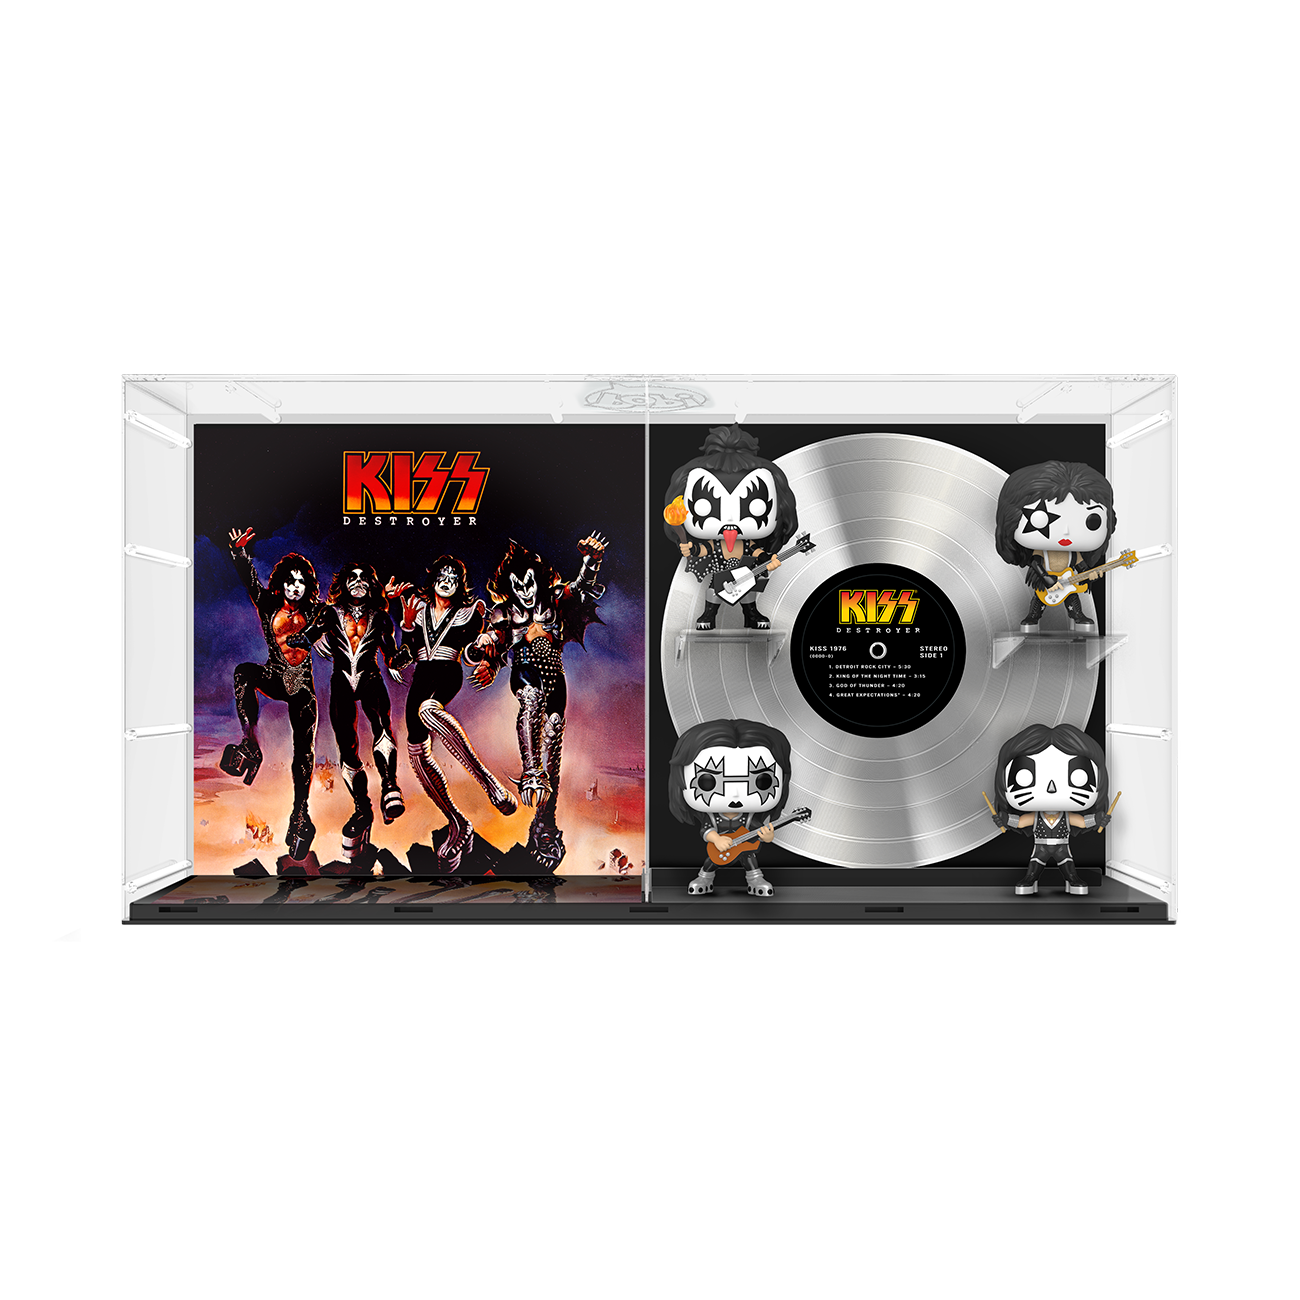 Funko Pop! Deluxe Album: Kiss - Destroyer - Walmart Exclusive - image 2 of 6